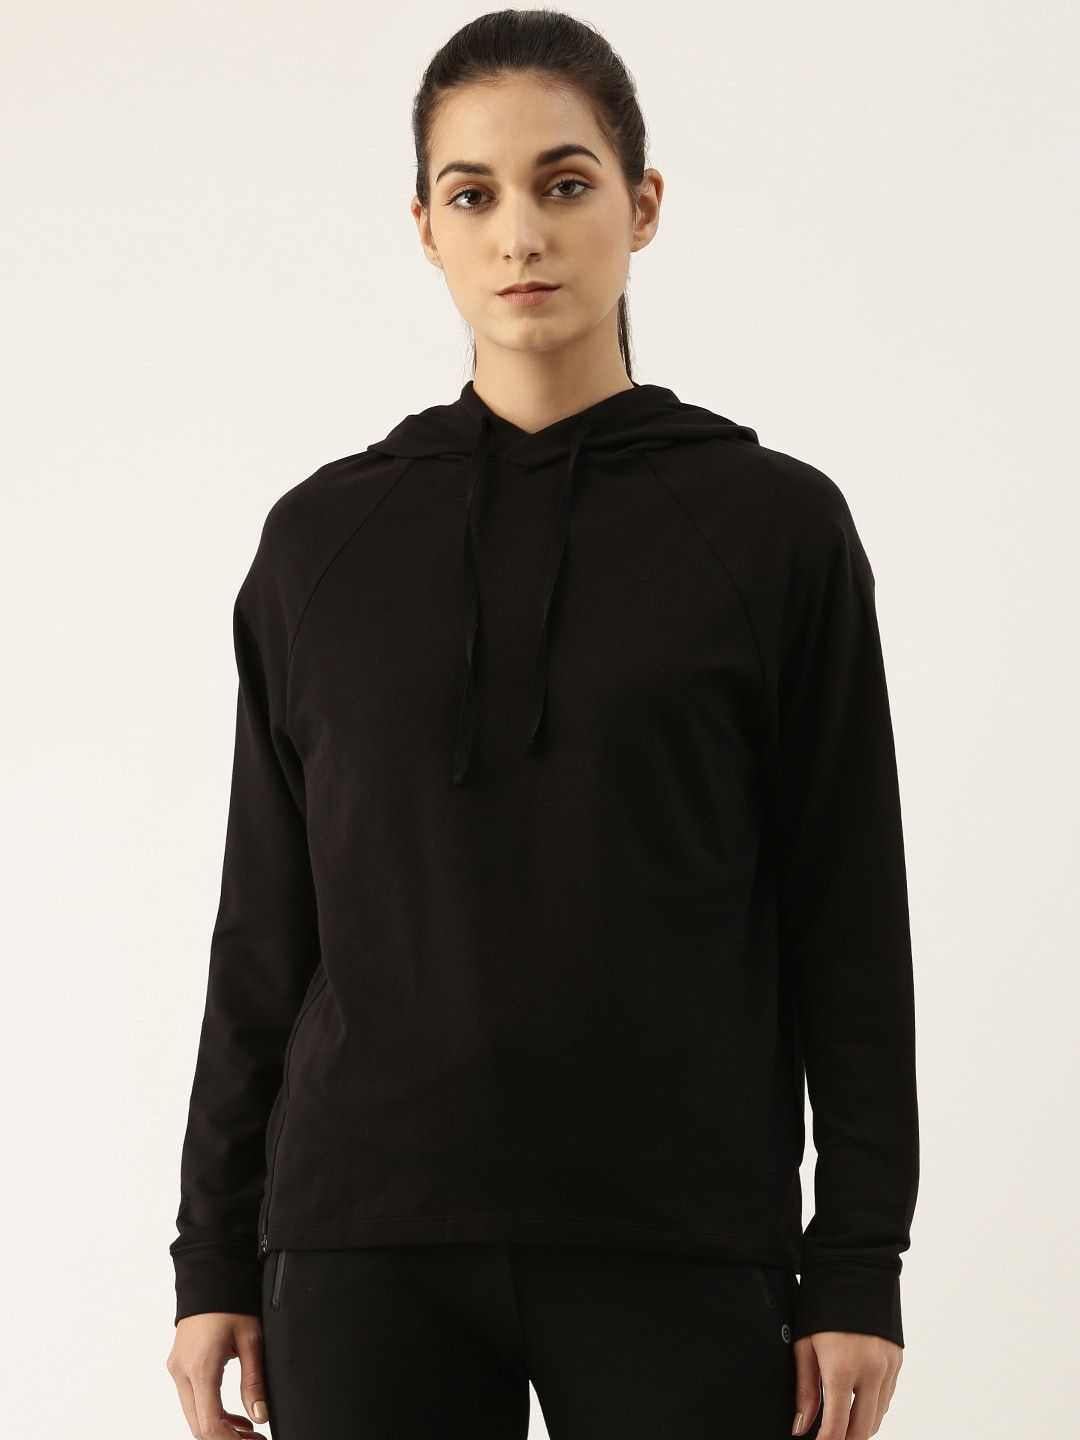 Enamor Women Black Hooded Sweatshirt Price in India